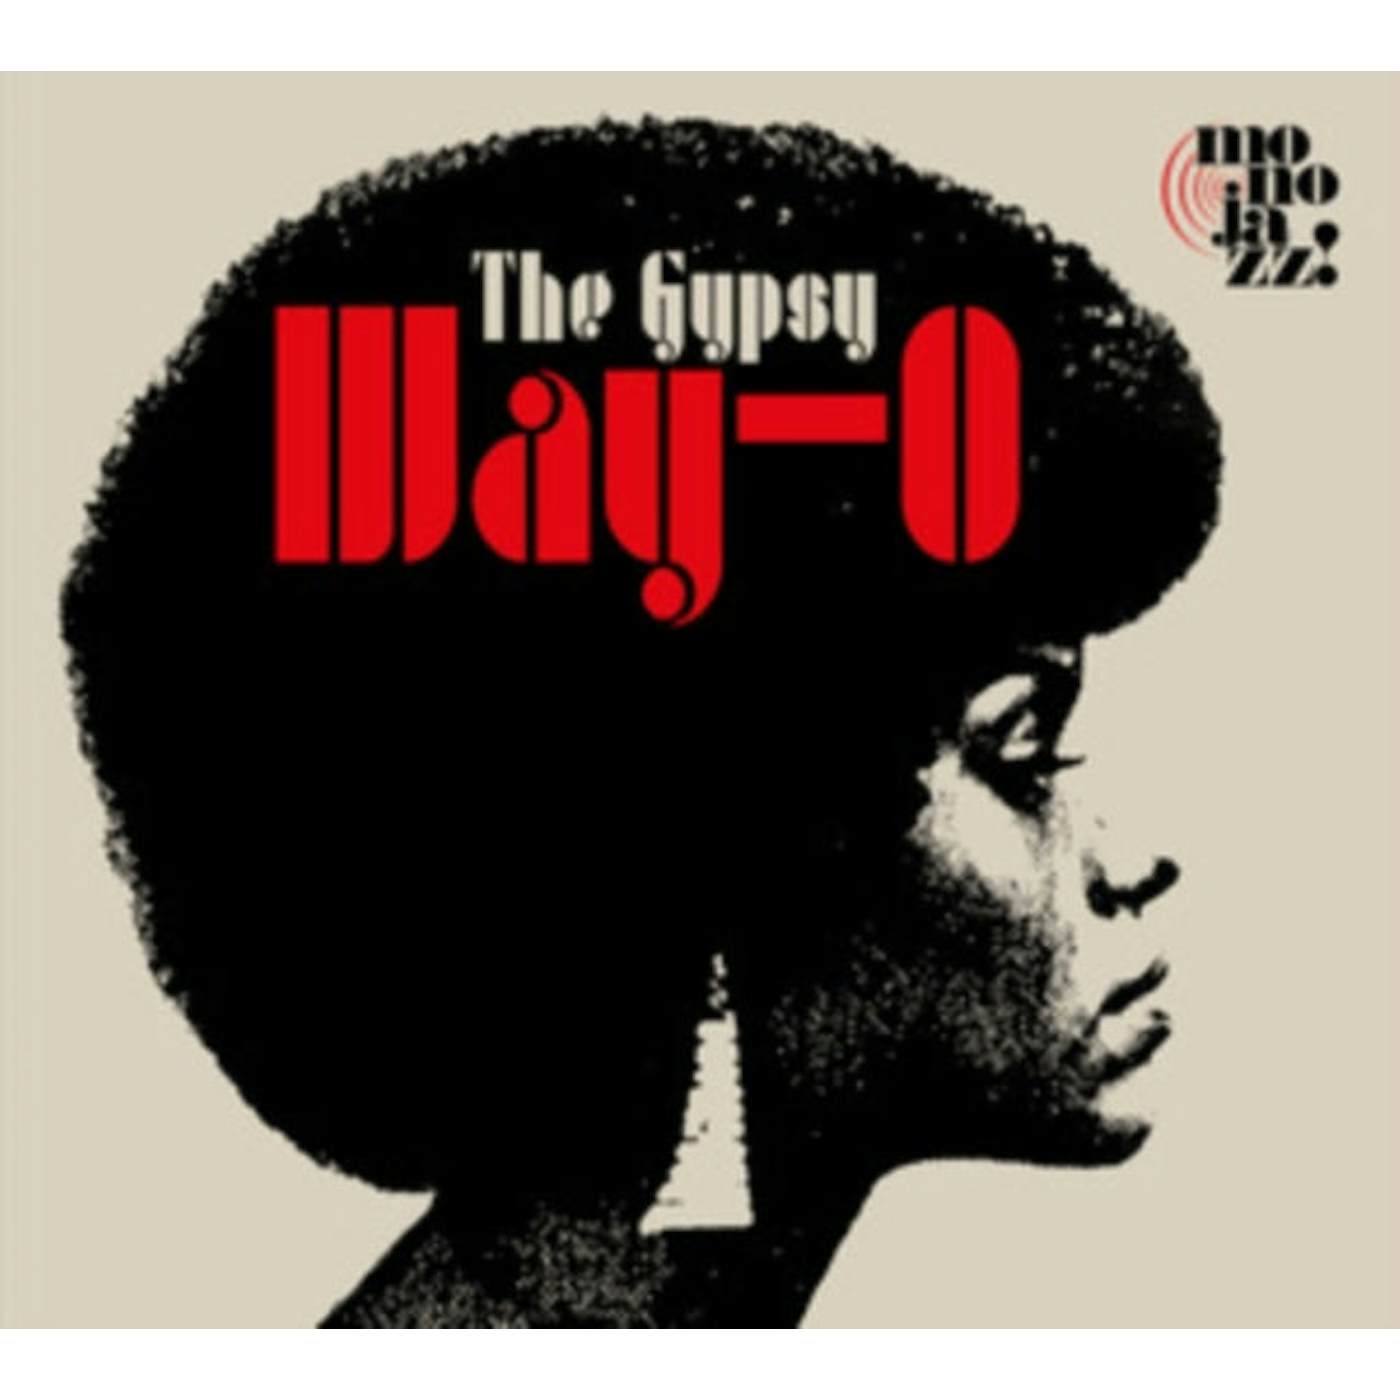 Gypsy LP - Way-O (Vinyl)